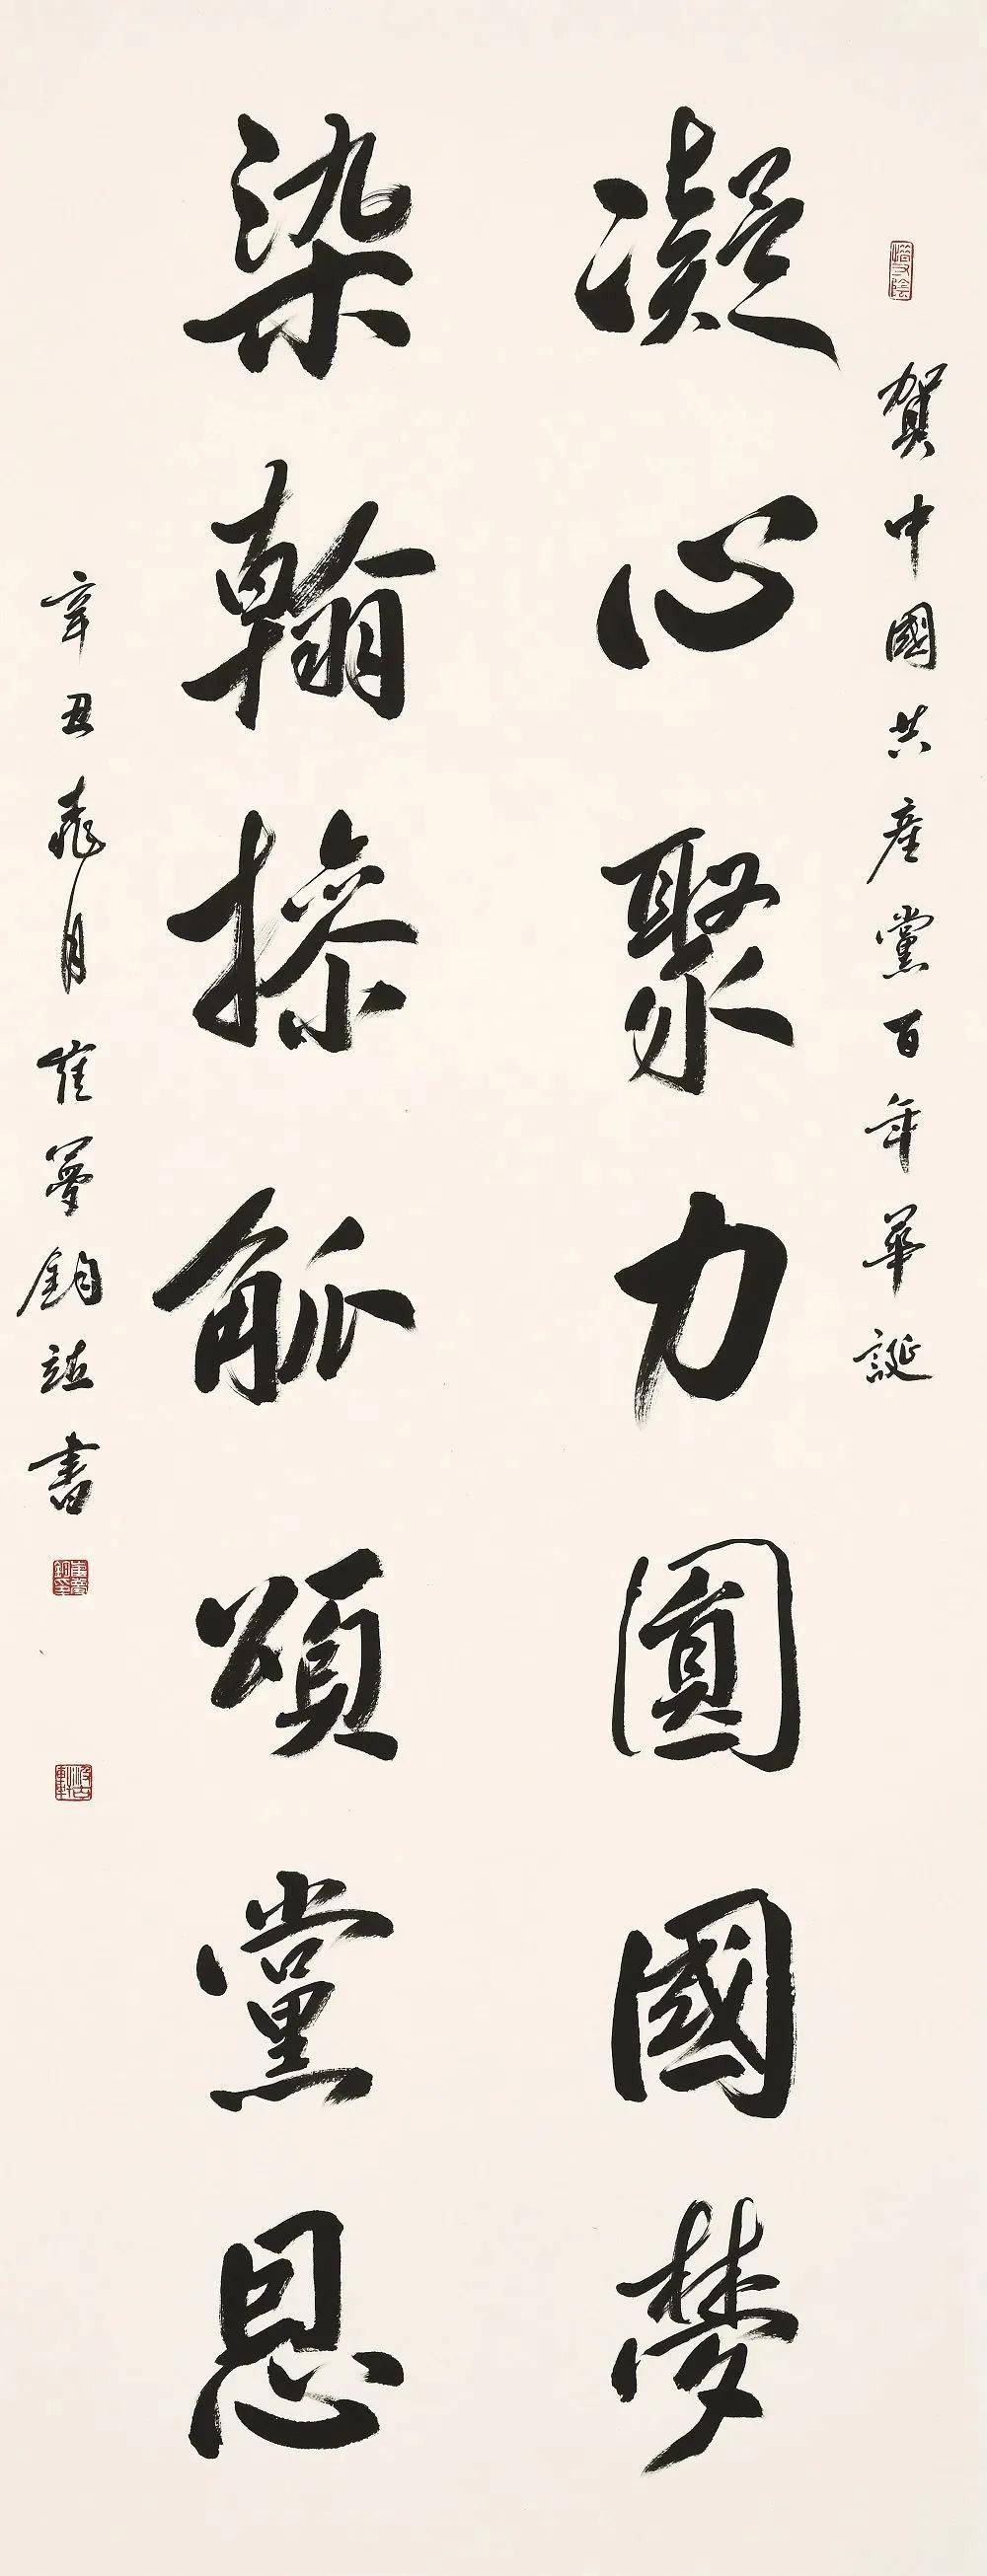 庆祝中国共产党成立100周年美术书法作品网络展(三)